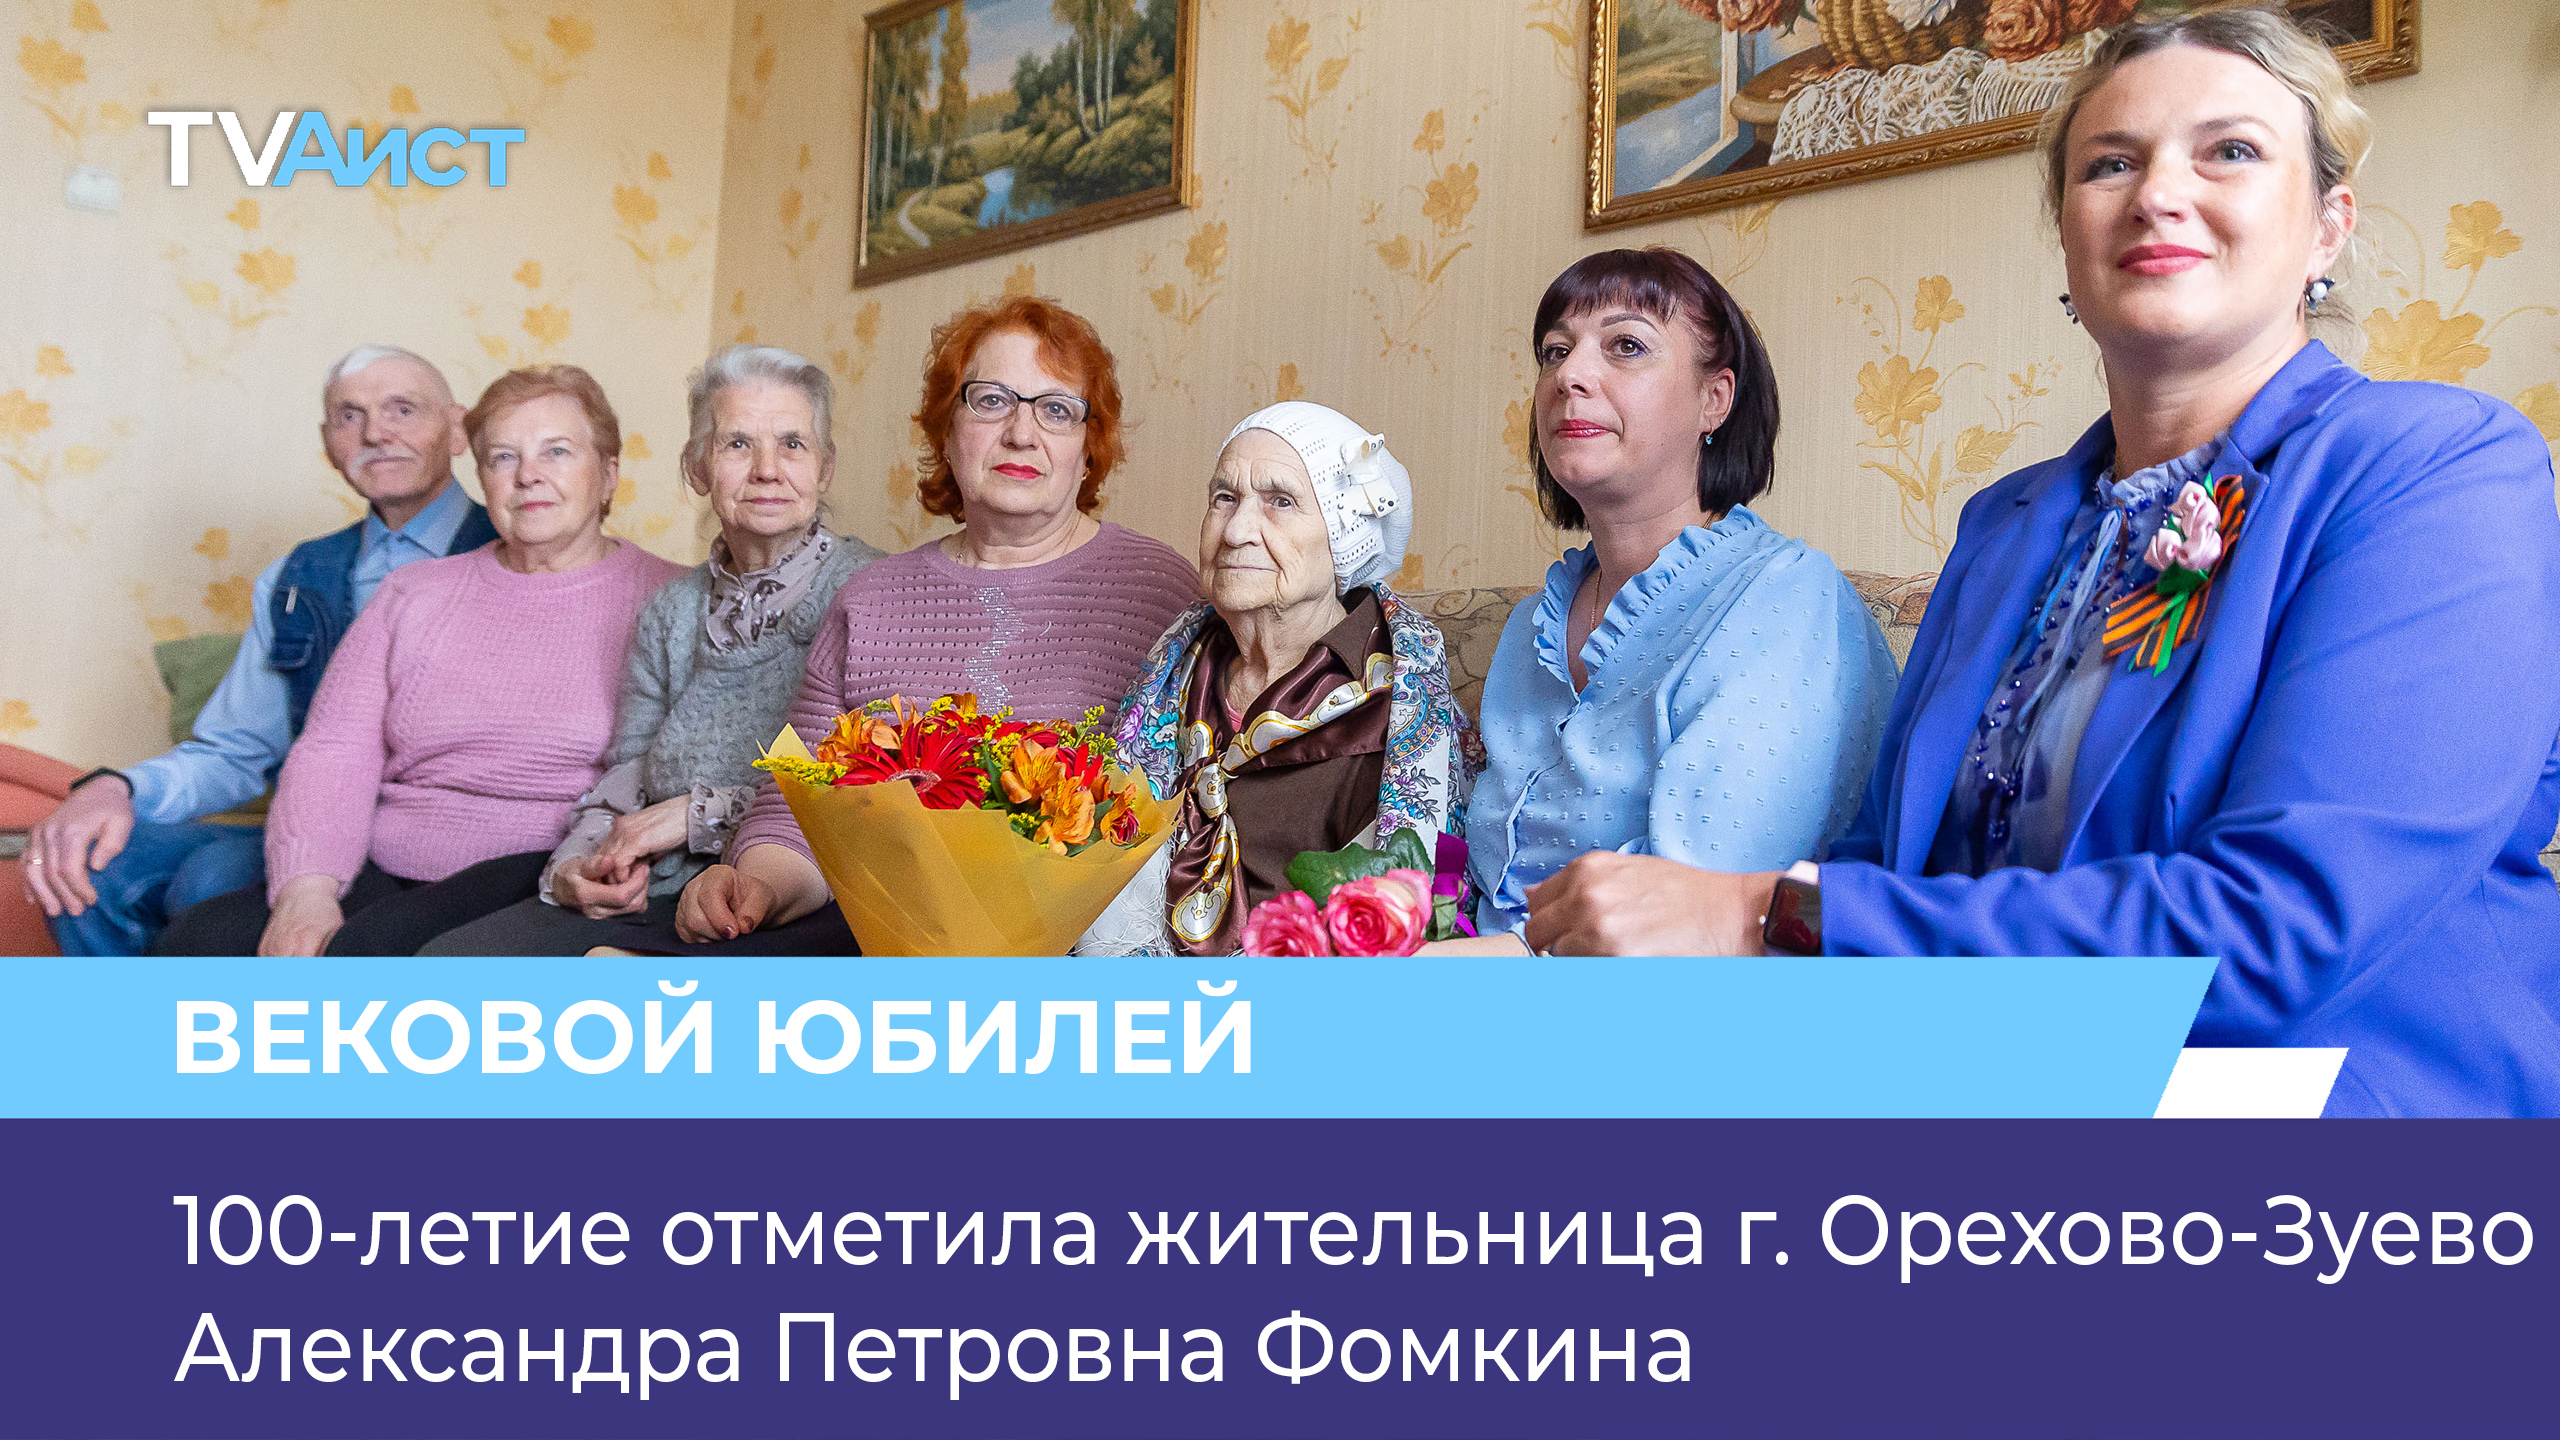 100-летие отметила жительница г. Орехово-Зуево Александра Петровна Фомкина